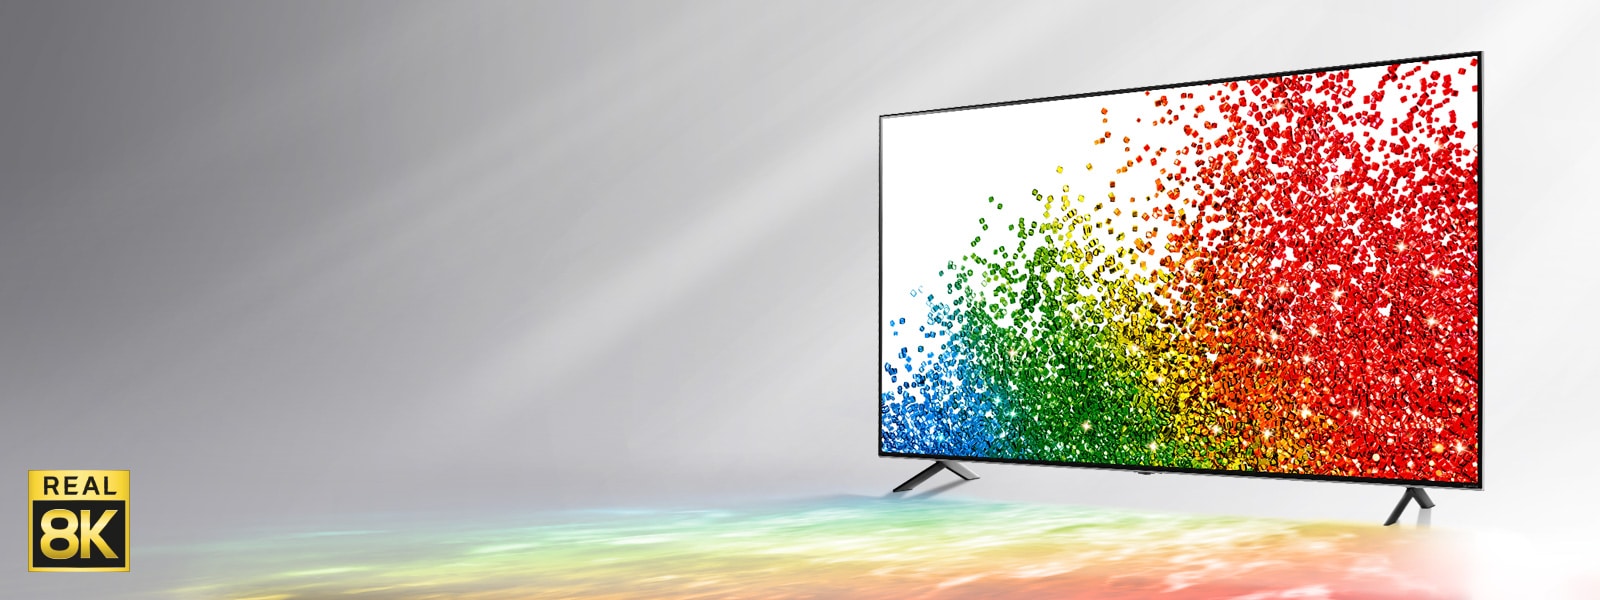 Et bilde av LG NanoCell-TV mot en grå bakgrunn med farger fra skjermen som reflekterer på marken foran.